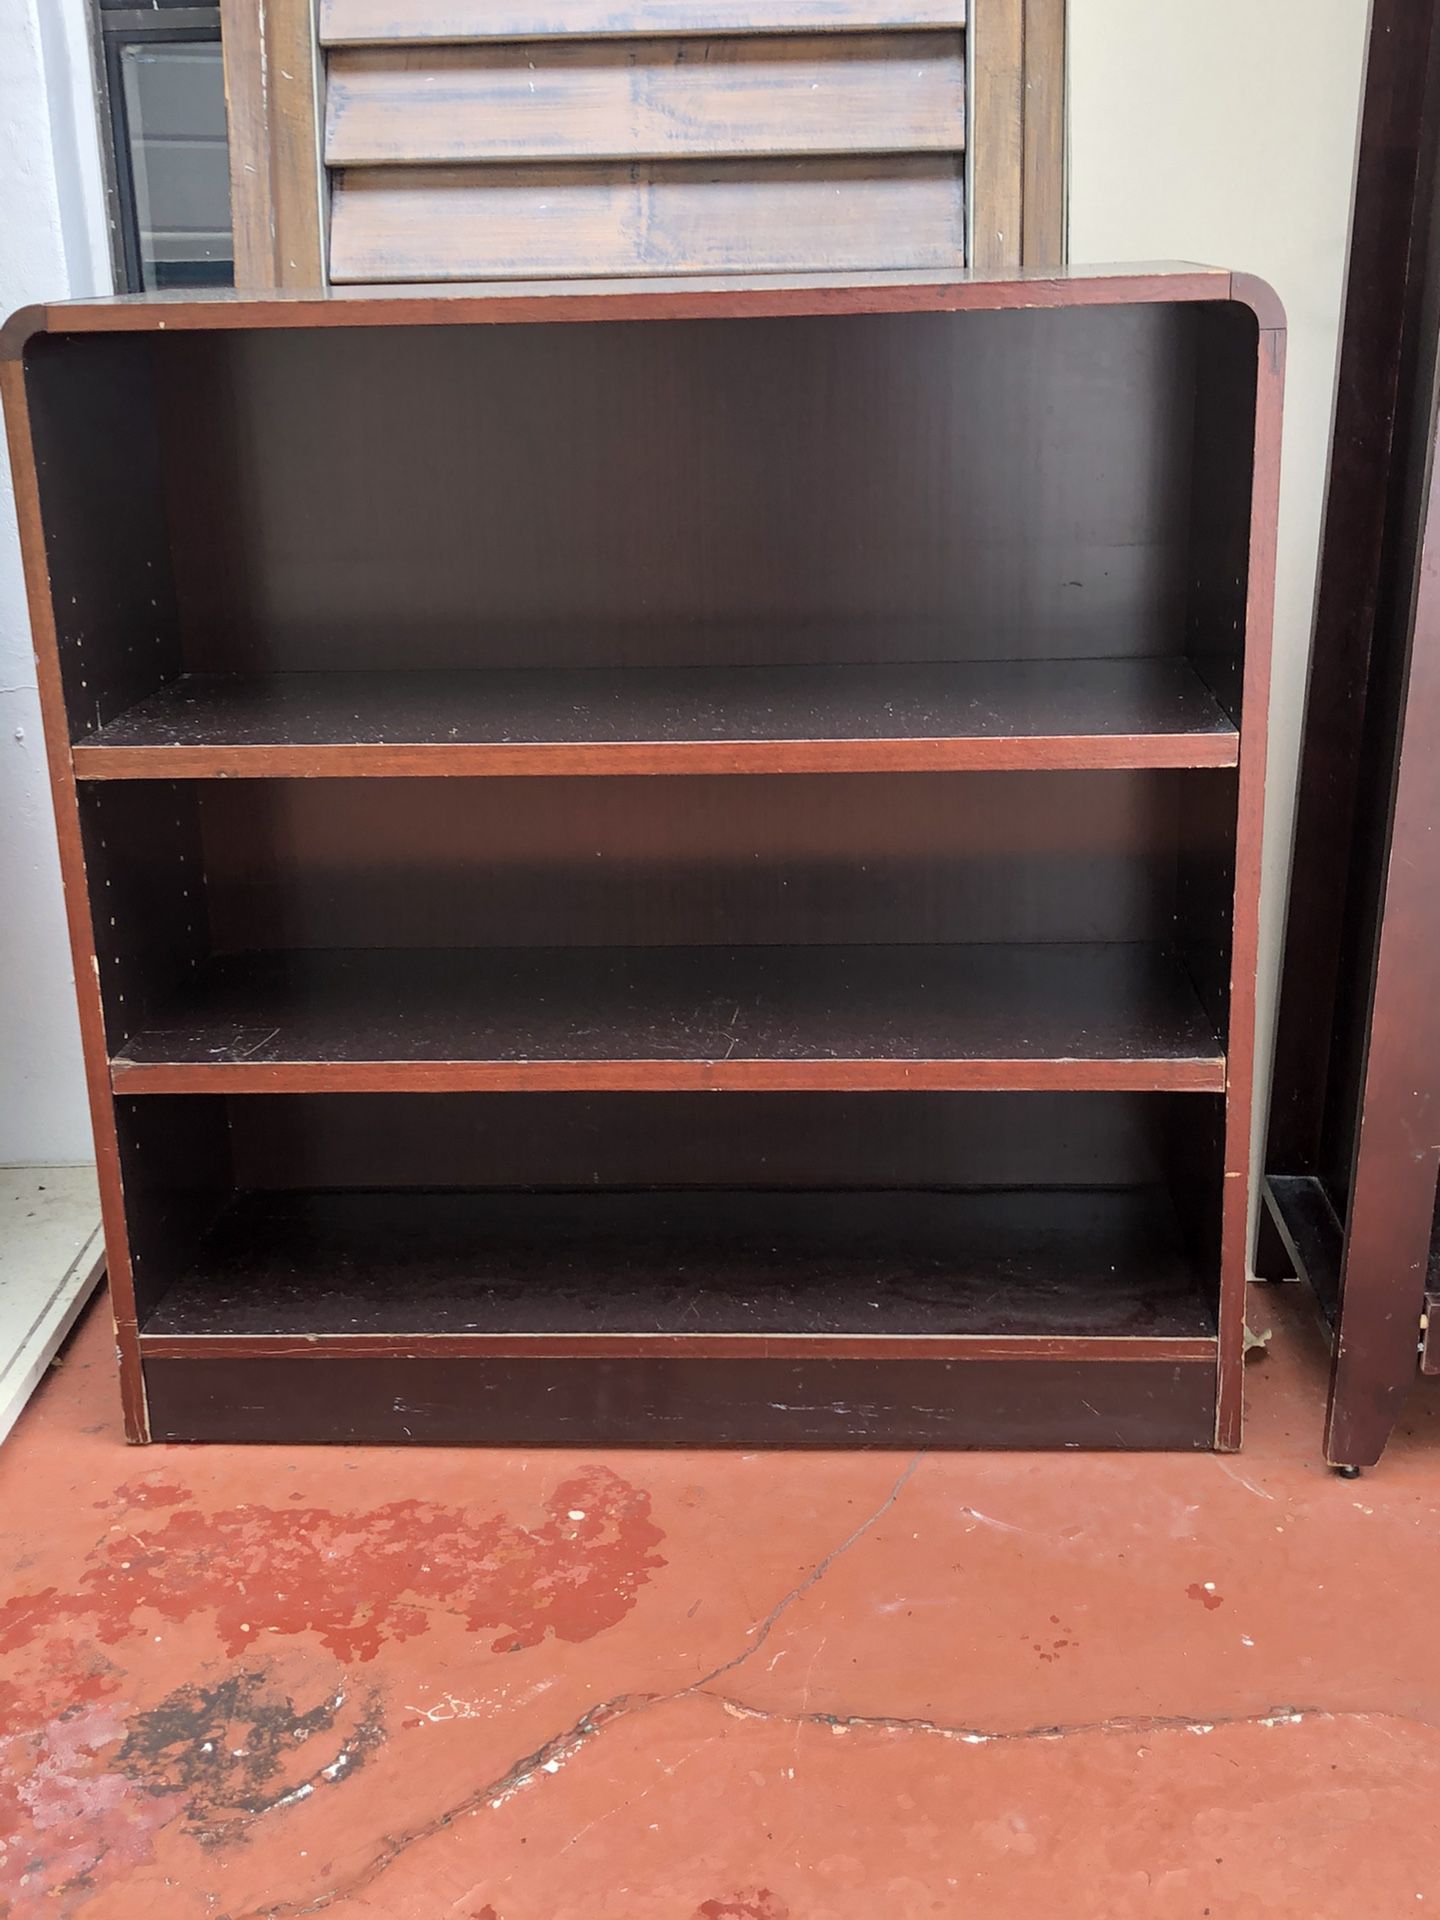 Wood book shelves or closet organizer